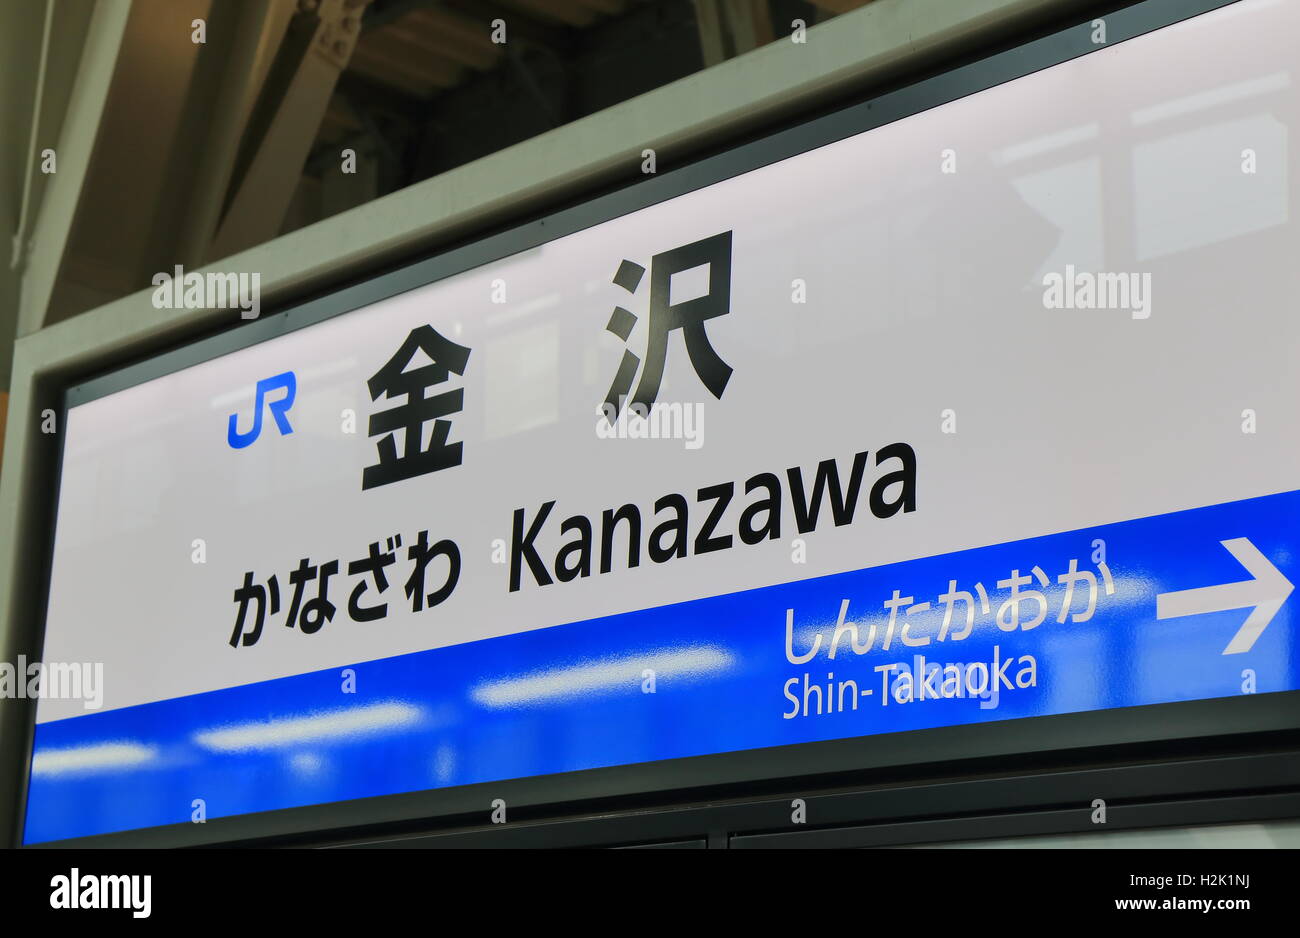 Kanazawa JR Train Station sign in Kanazawa Japan Stock Photo